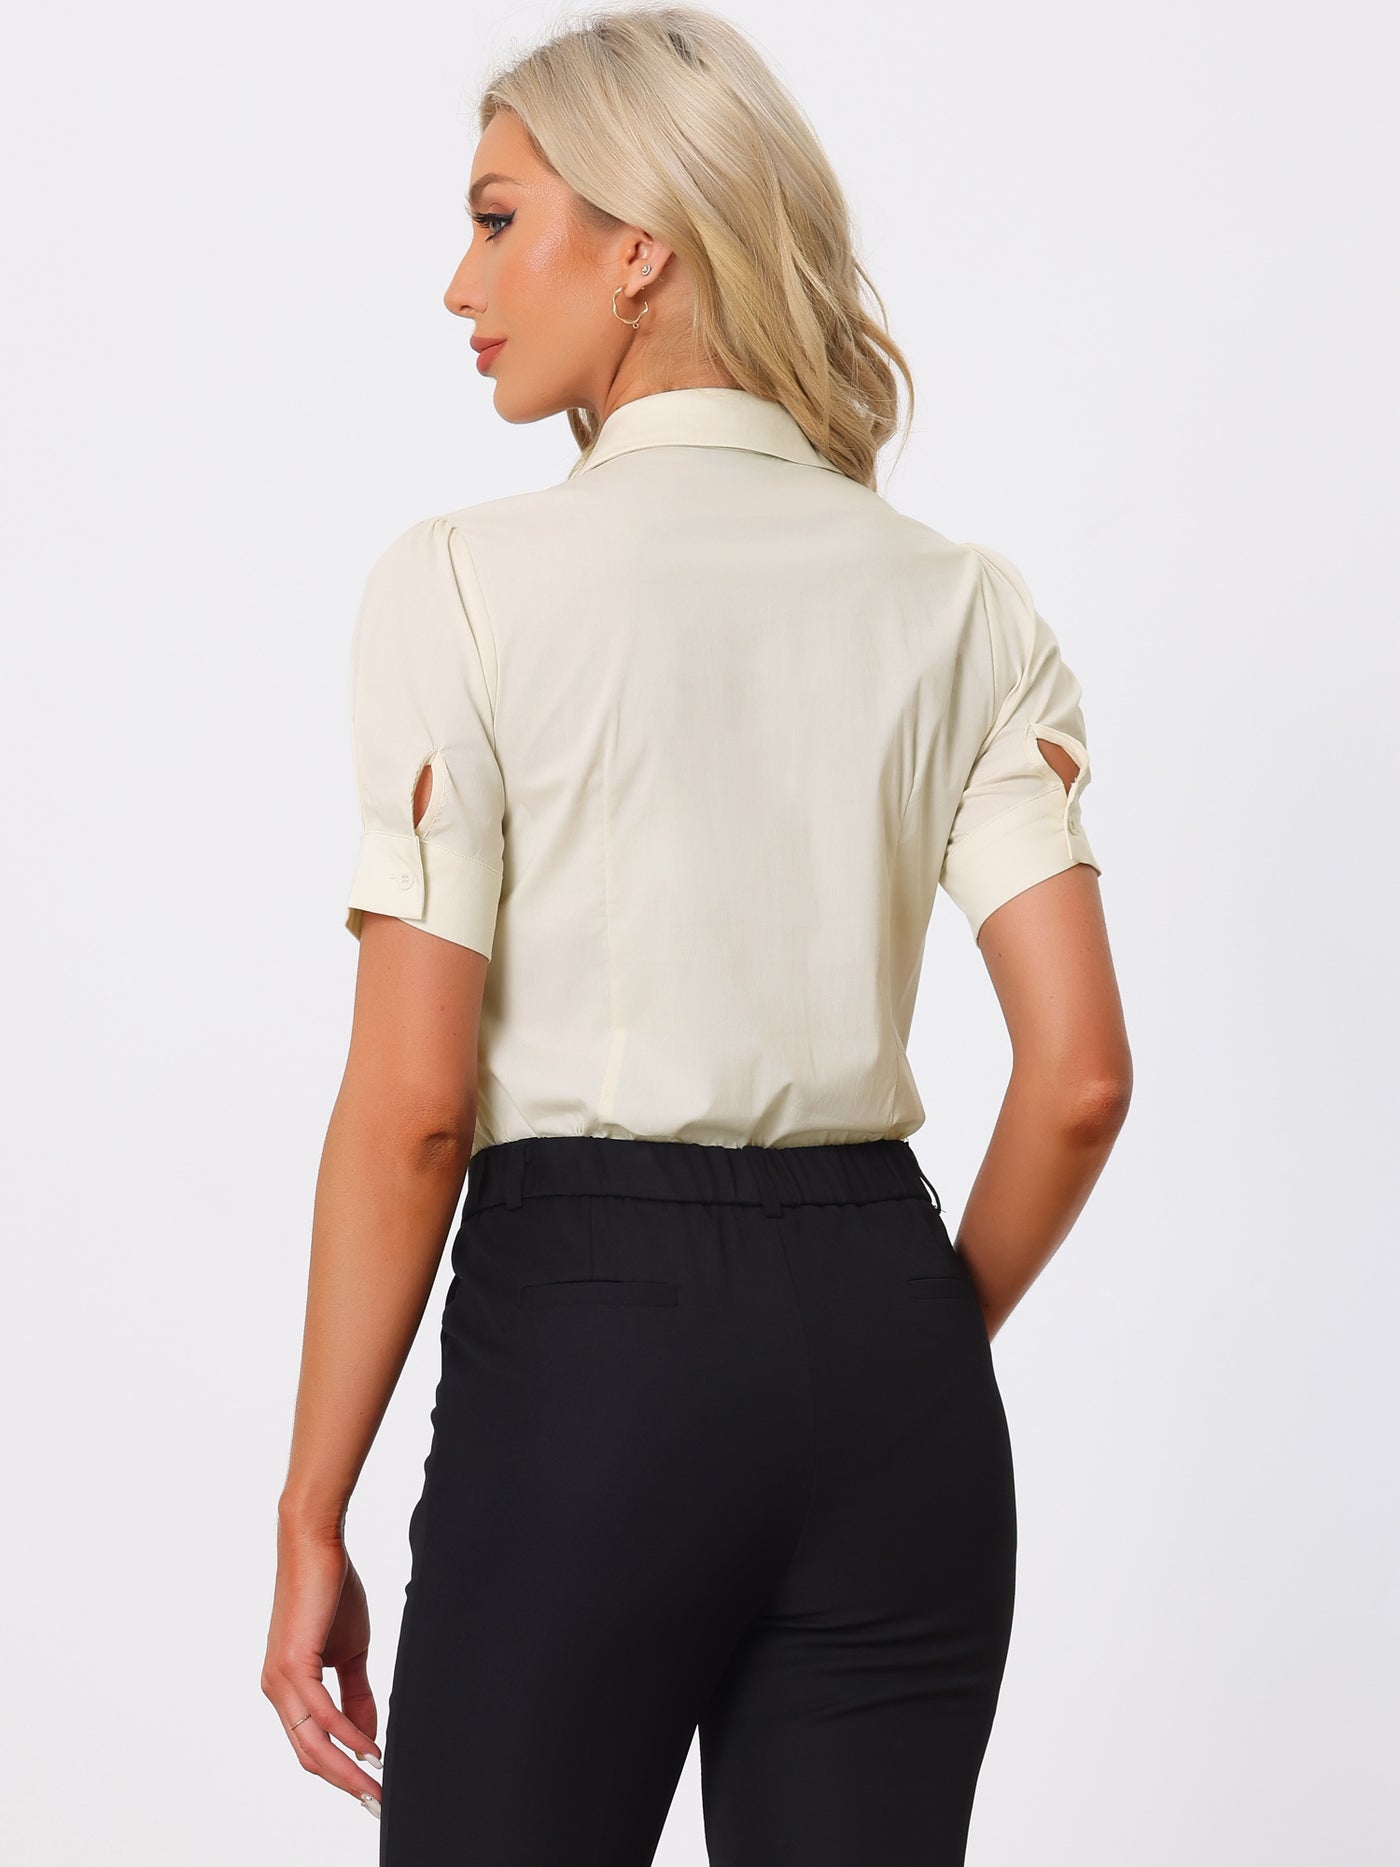 Allegra K Button Down Leotard Shirt Short Sleeve Collared Business Work Bodysuit